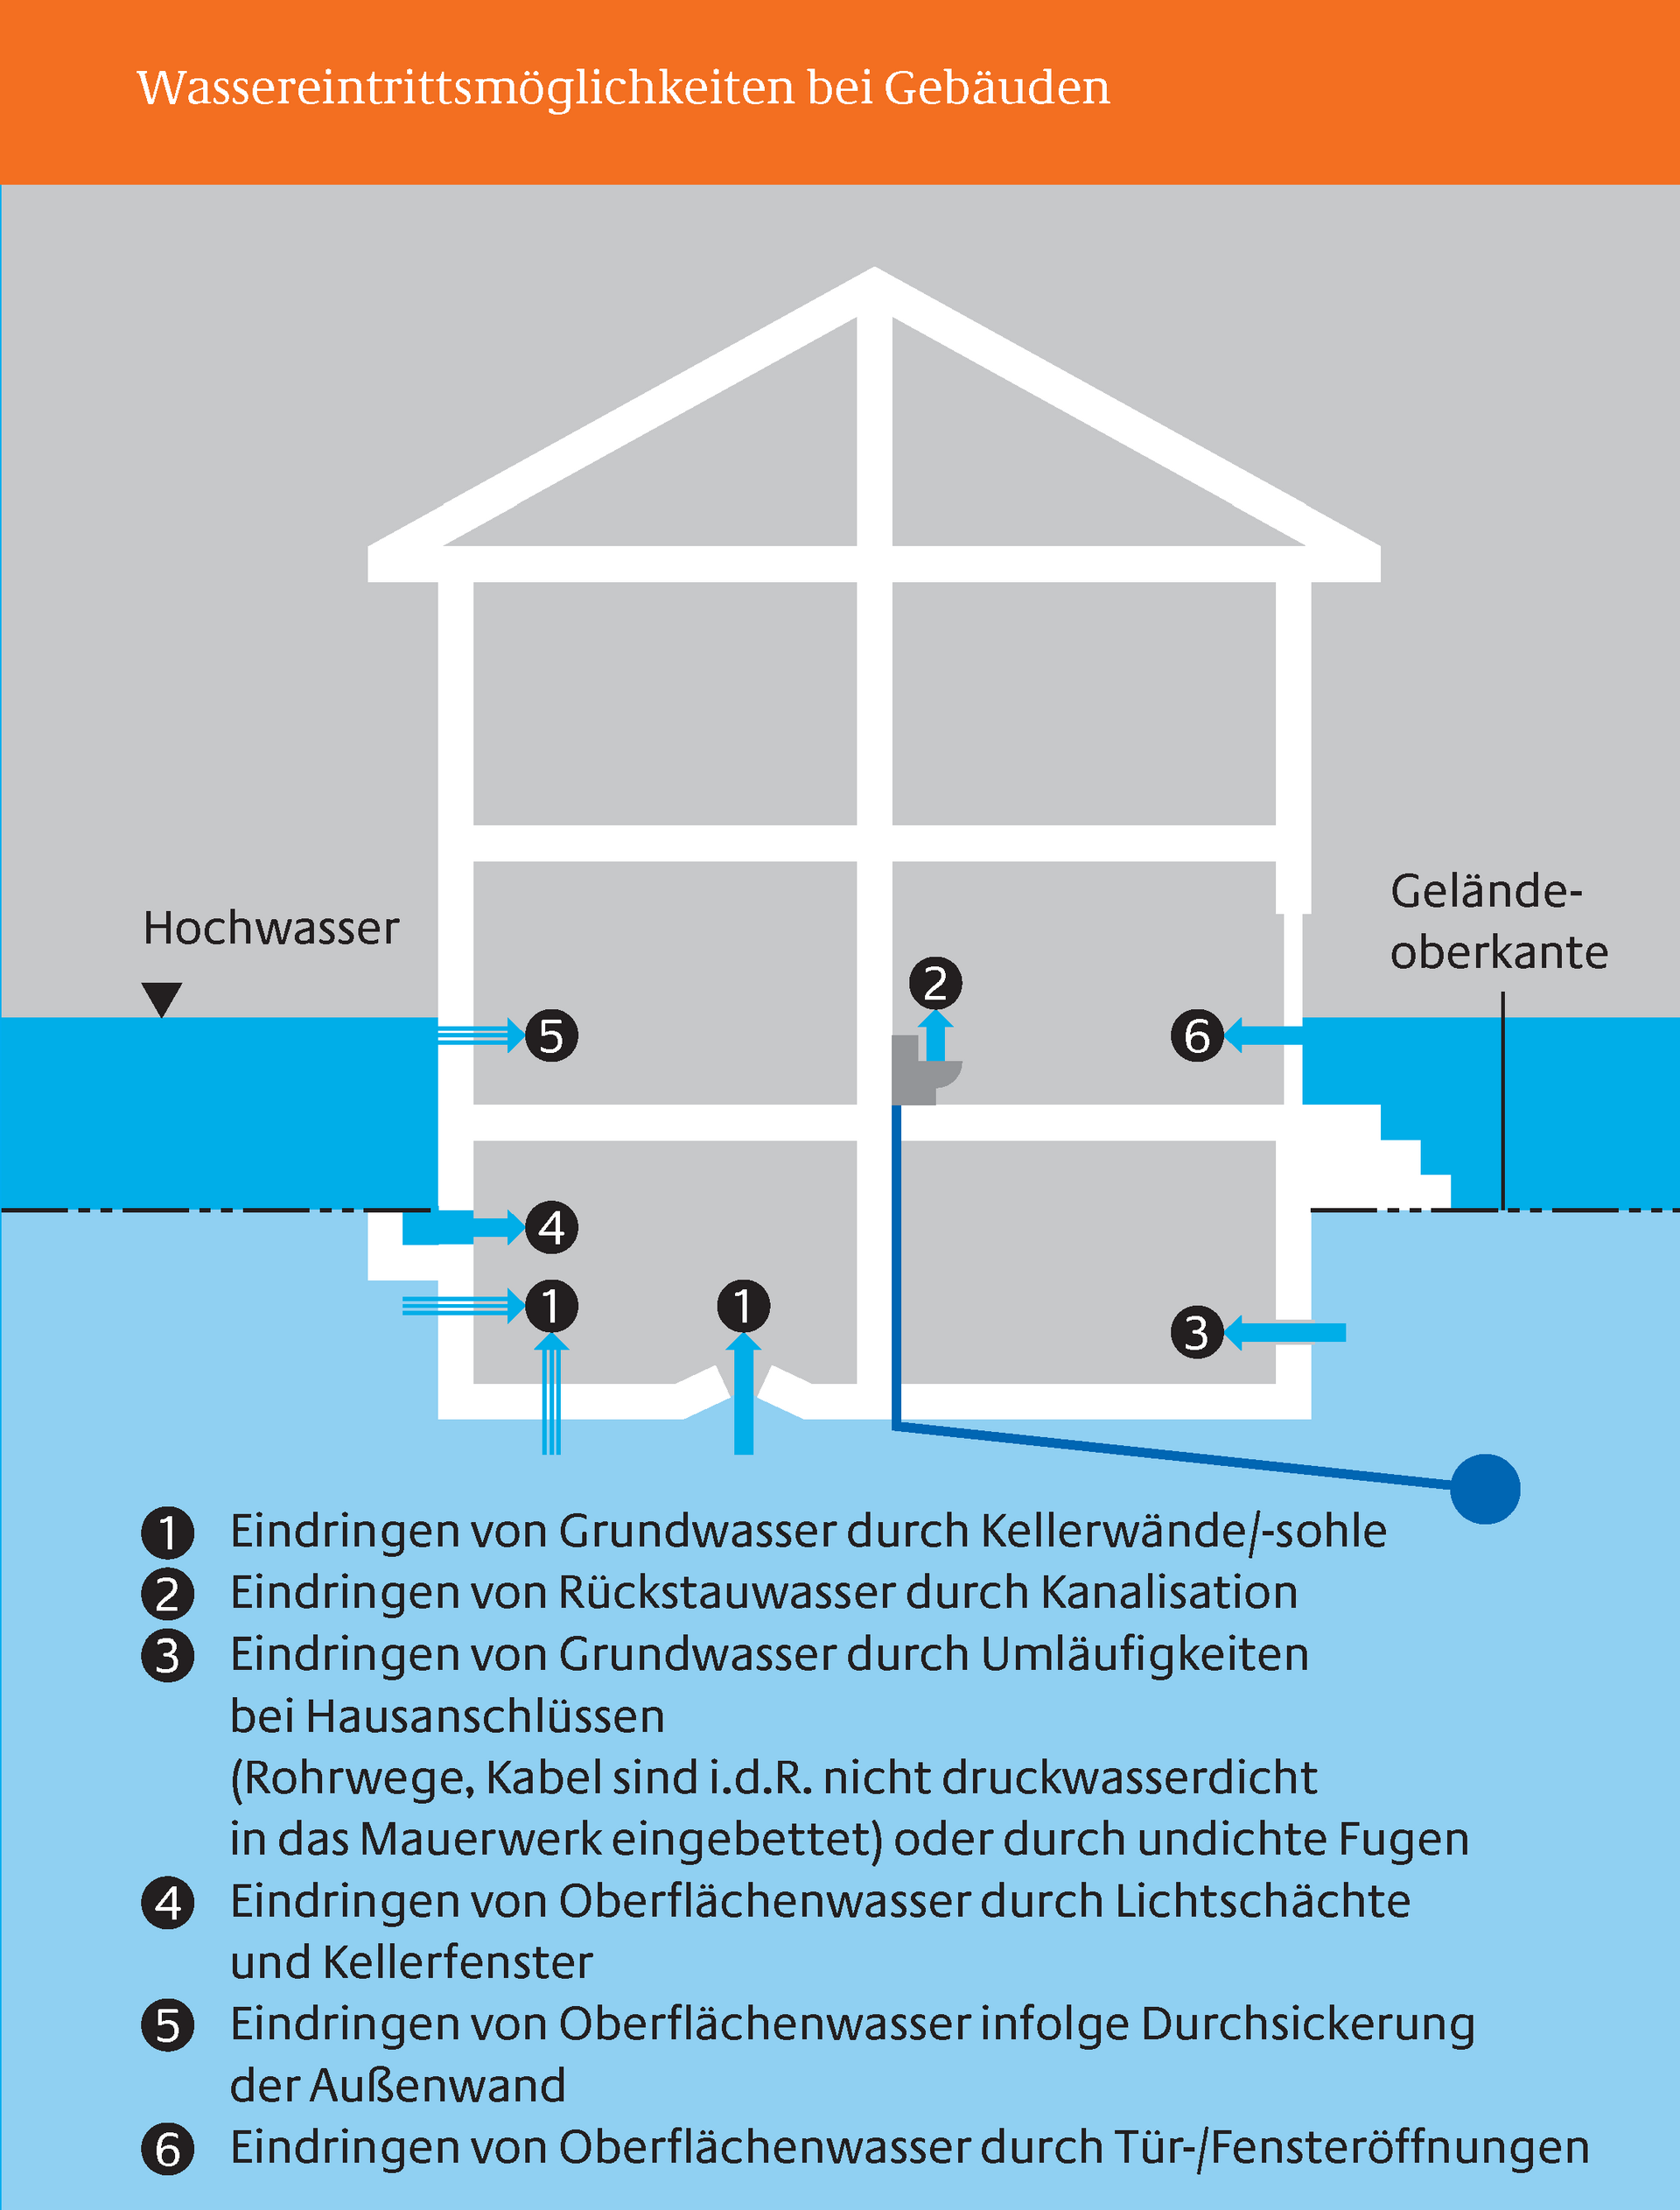 Wassereintrittsmöglichkeiten bei Gebäuden (Abbildung aus der Hochwasserschutzfibel des BMVBS)